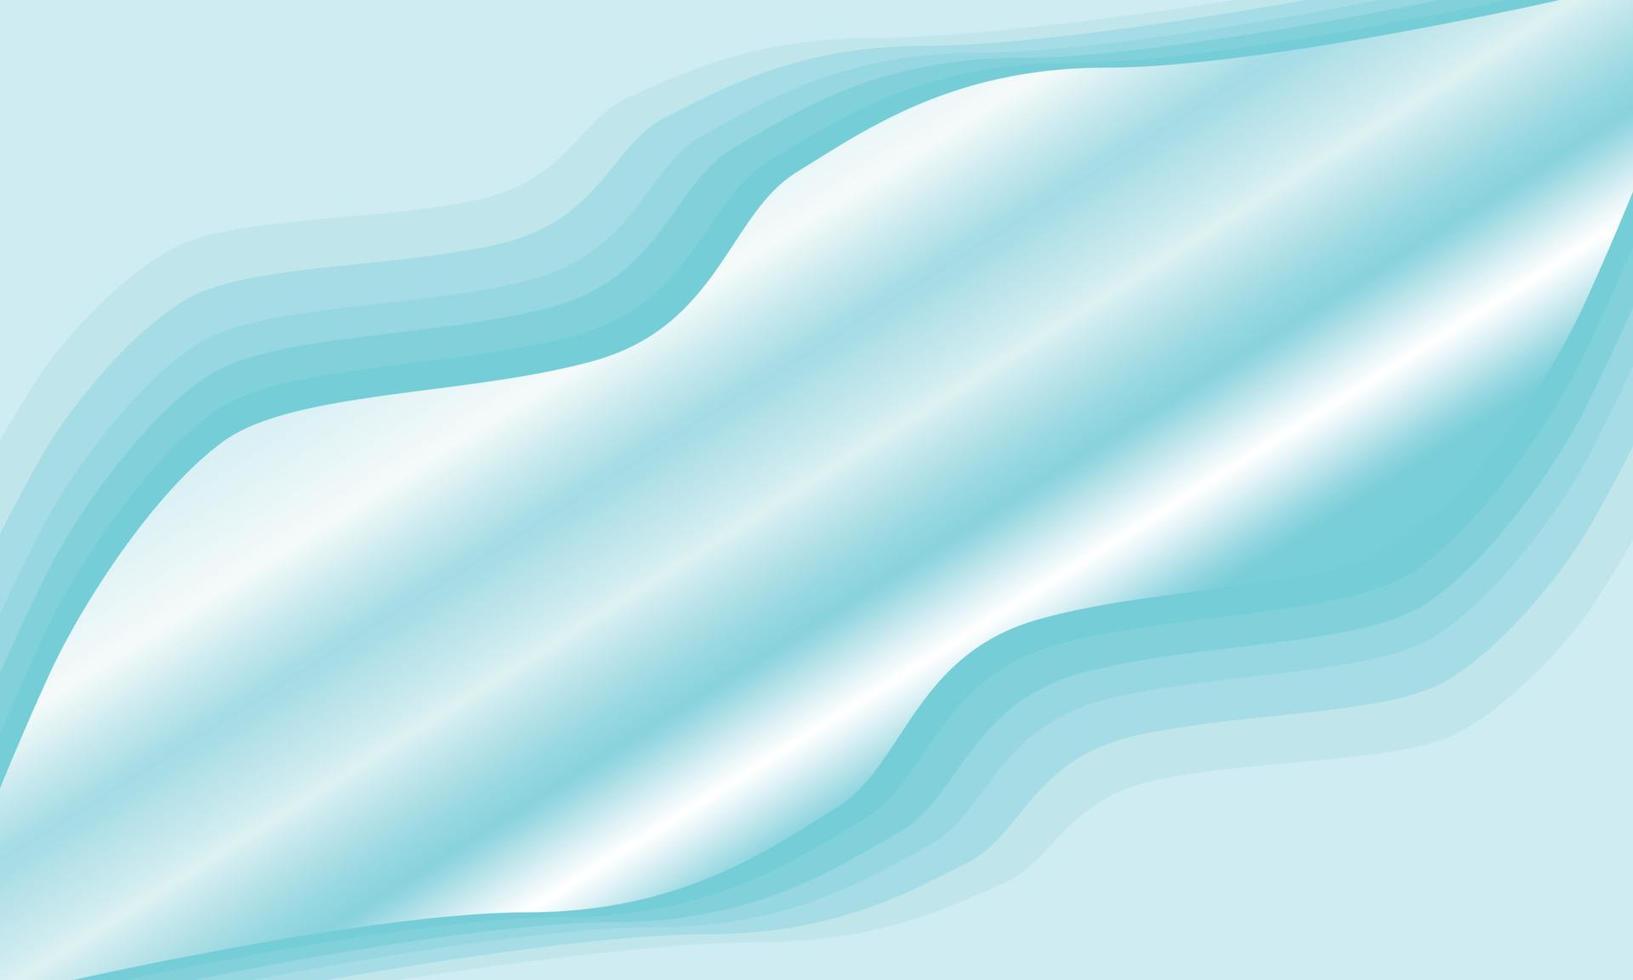 blå hav Färg bakgrund för social media design vektor